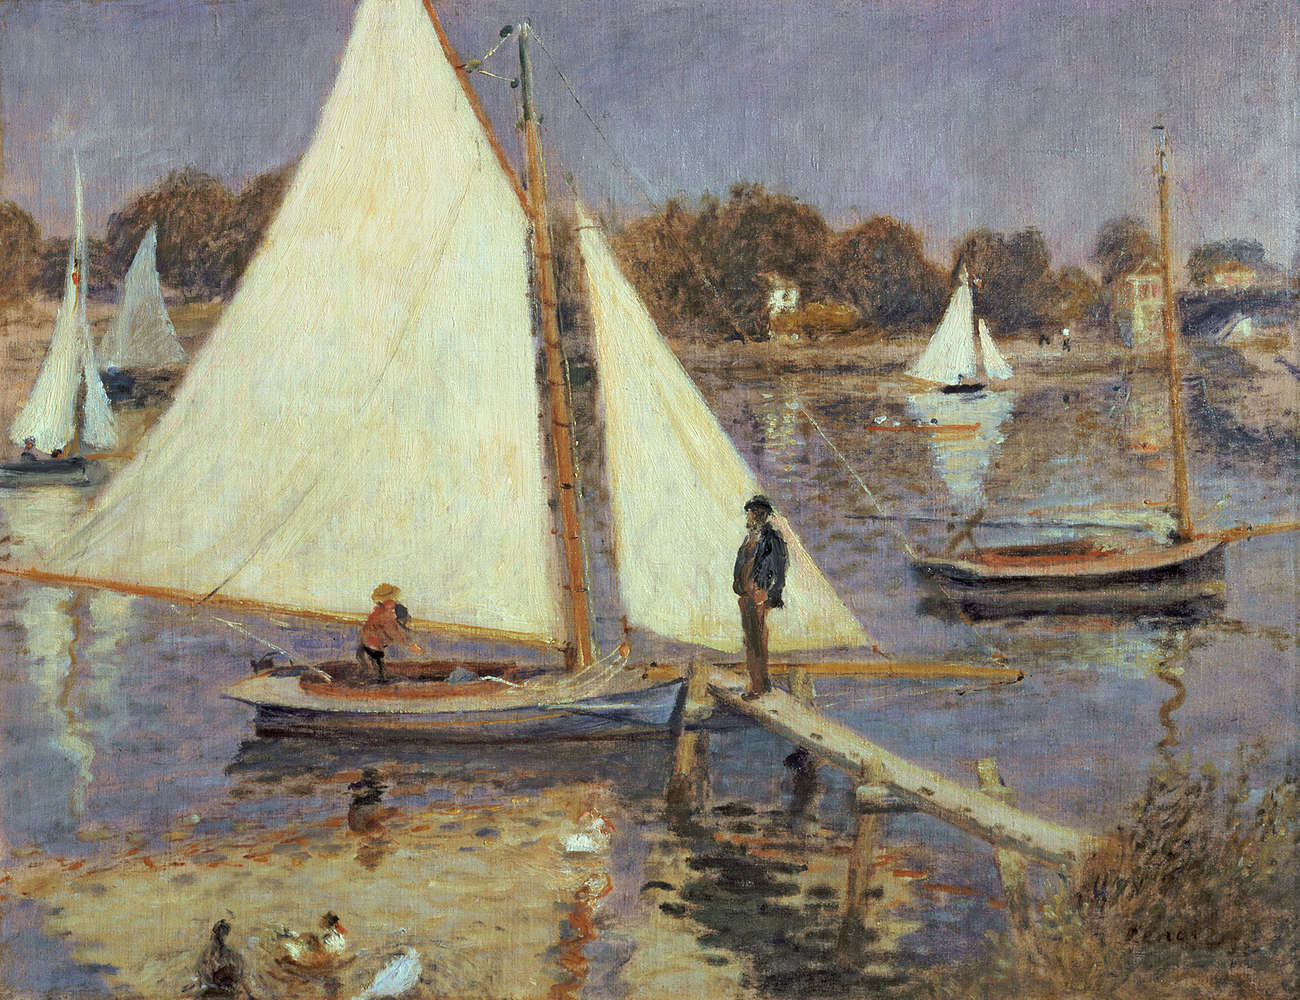             Fototapete "Die Seine bei Argenteuil" von Pierre Auguste Renoir
        